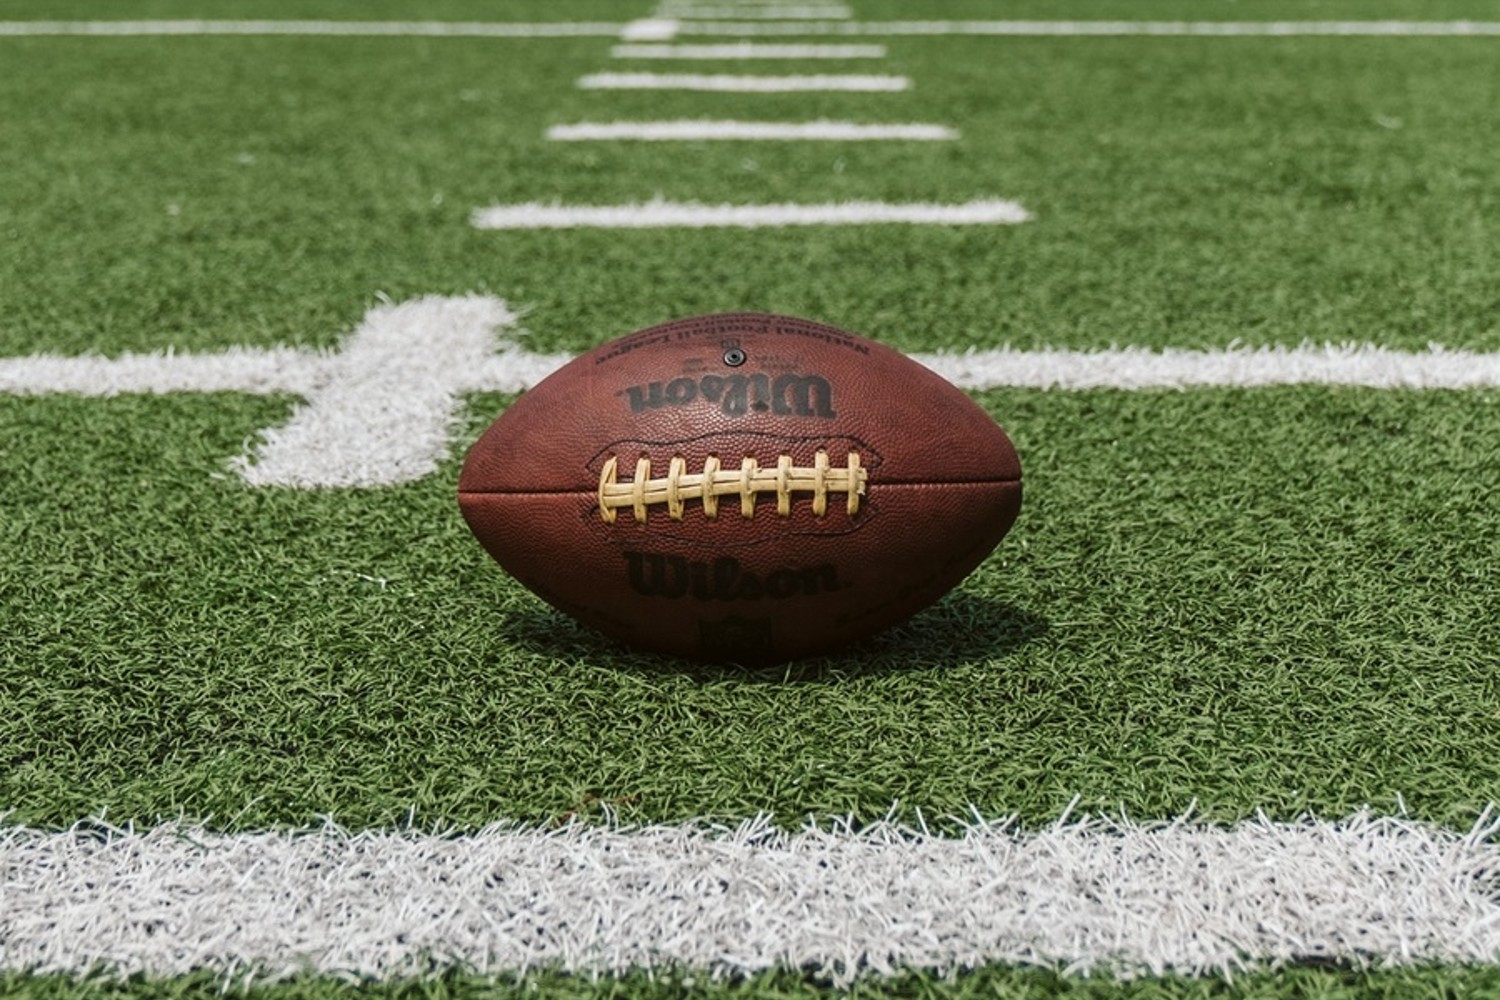 In-game ad revenue for Super Bowl LV neared $435 million